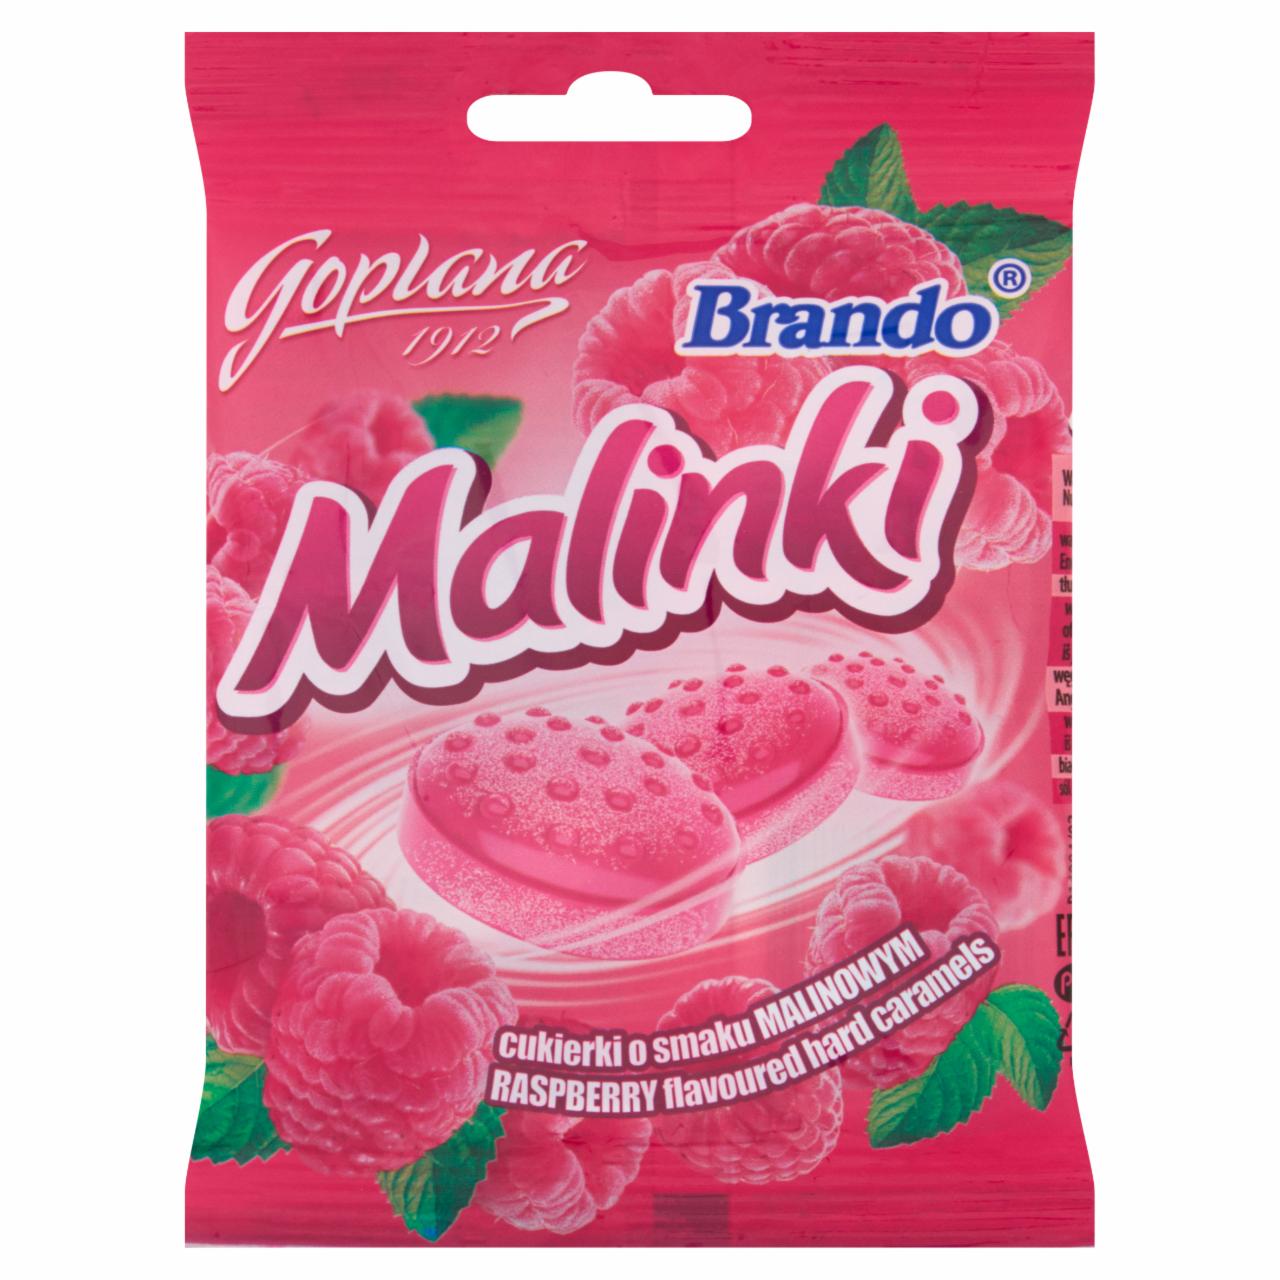 Zdjęcia - Goplana Brando Malinki Cukierki o smaku malinowym 90 g